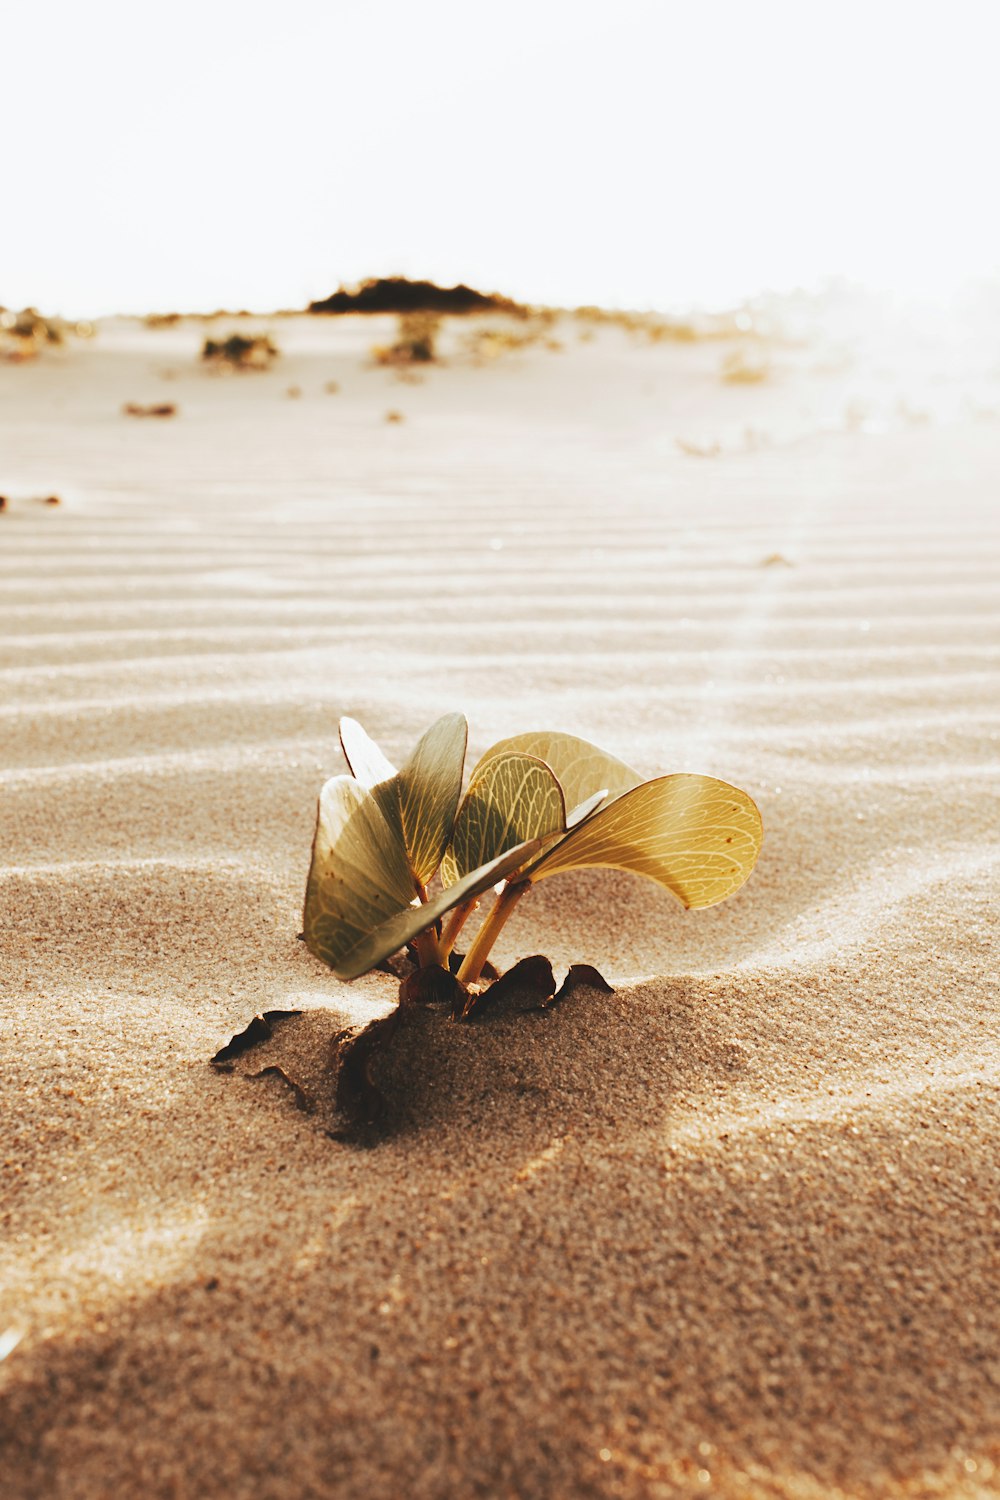 borboleta marrom e branca na areia marrom durante o dia